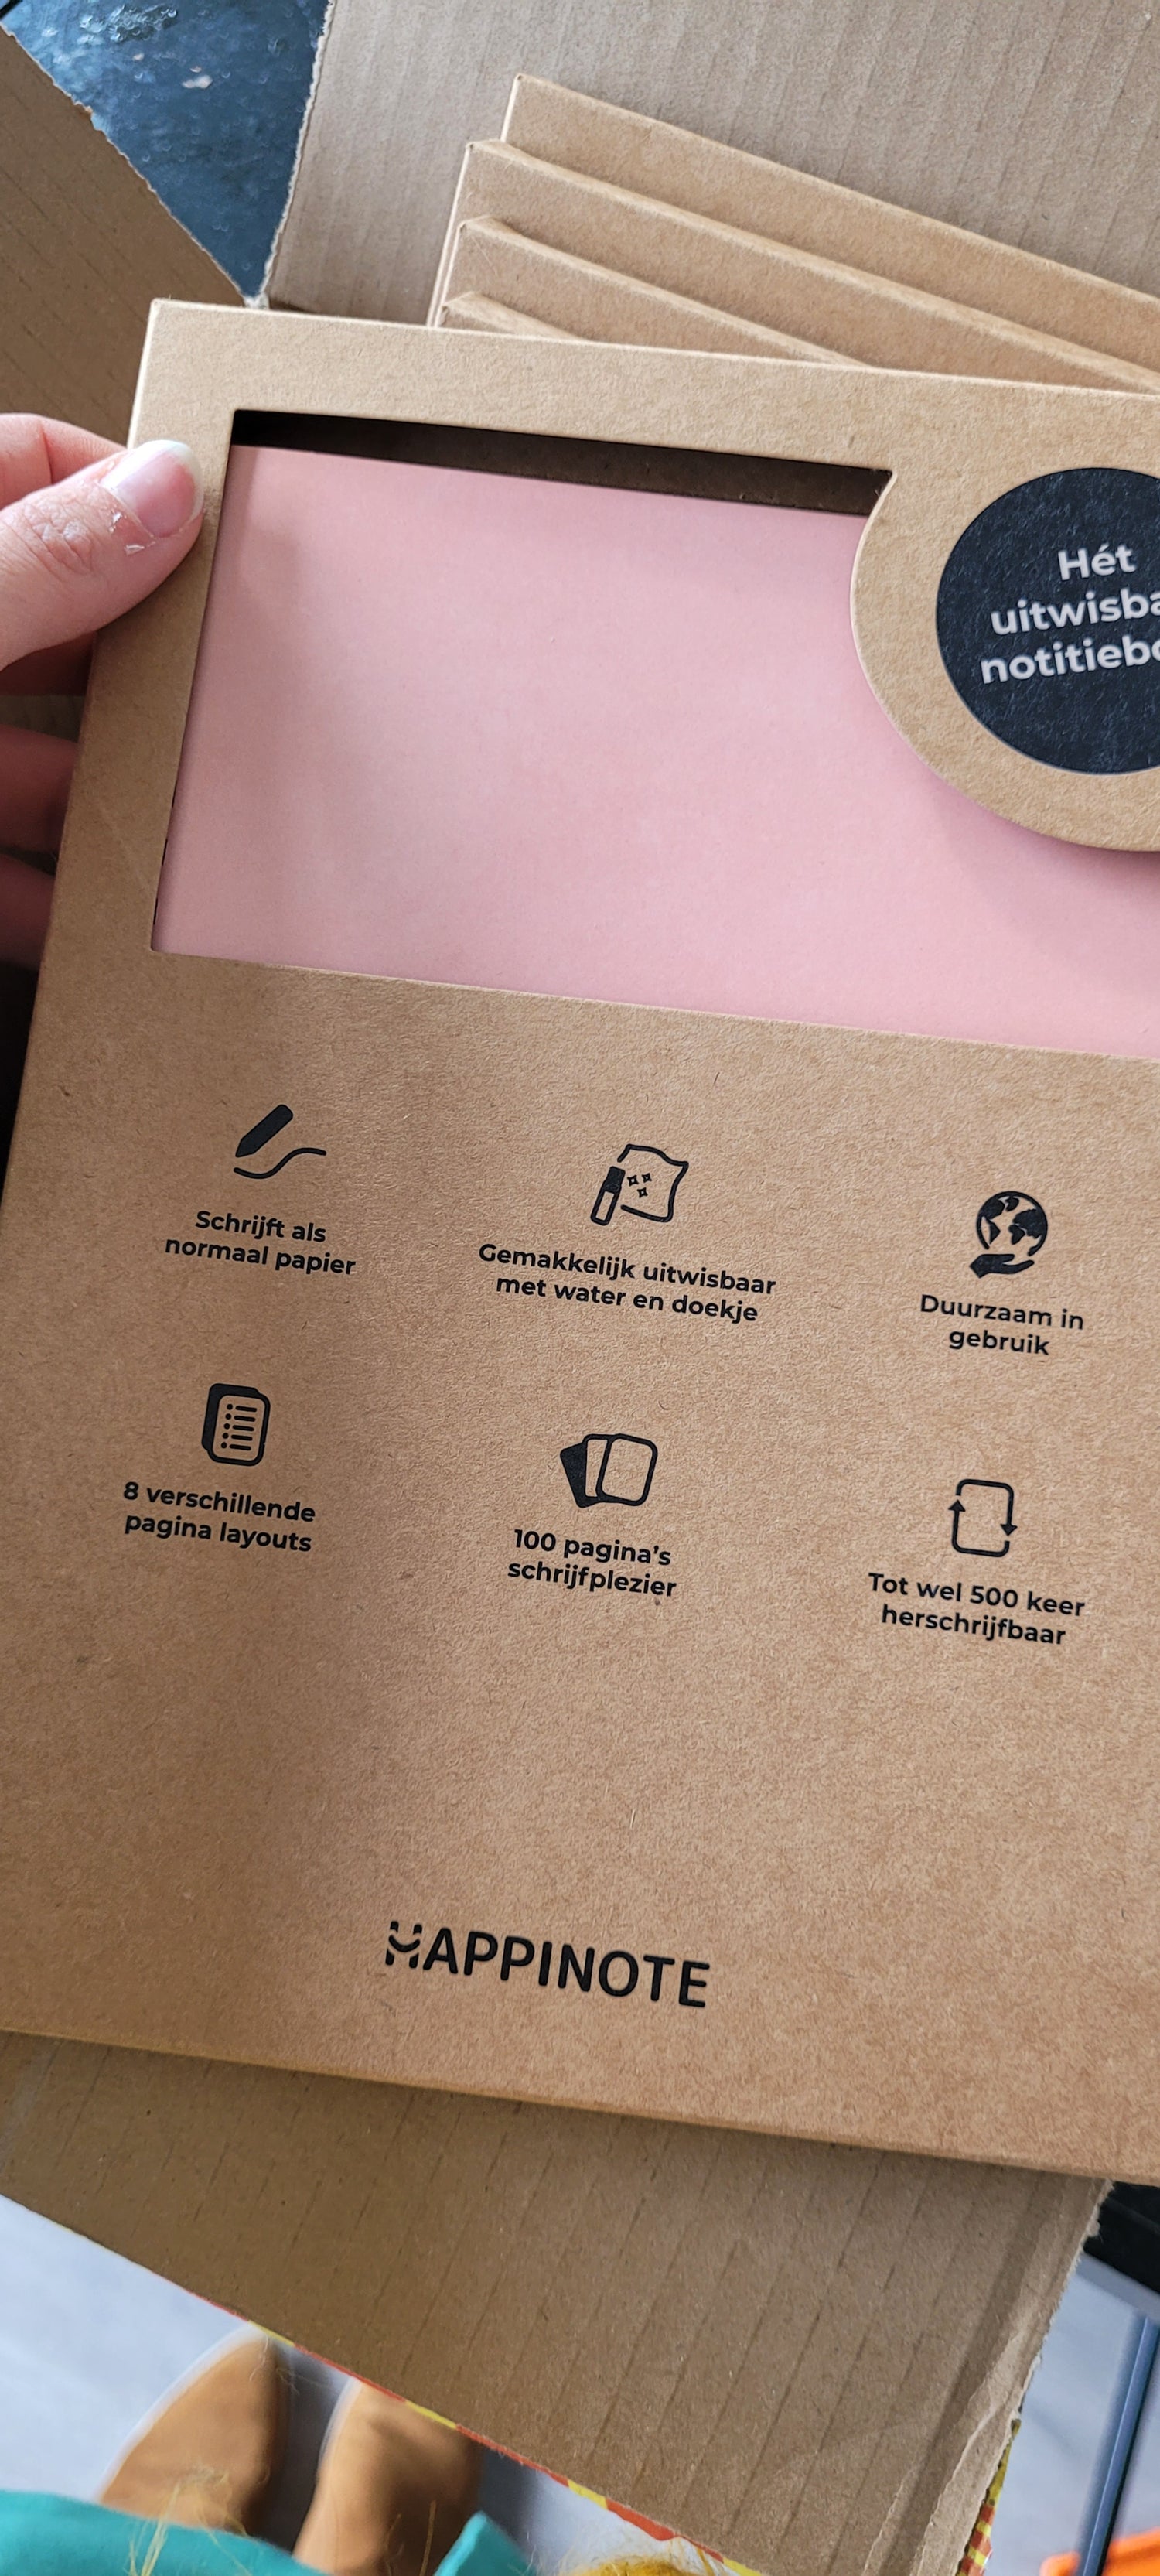 Happinote uitwisbaar notitieboek pink desert